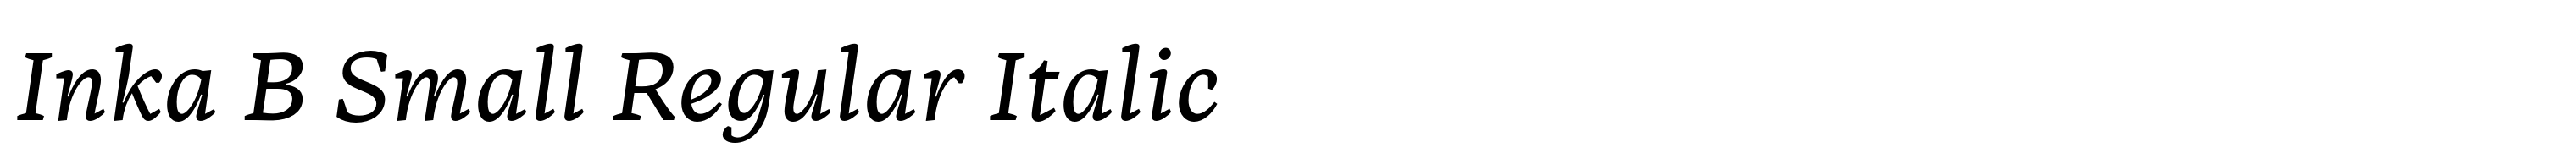 Inka B Small Regular Italic